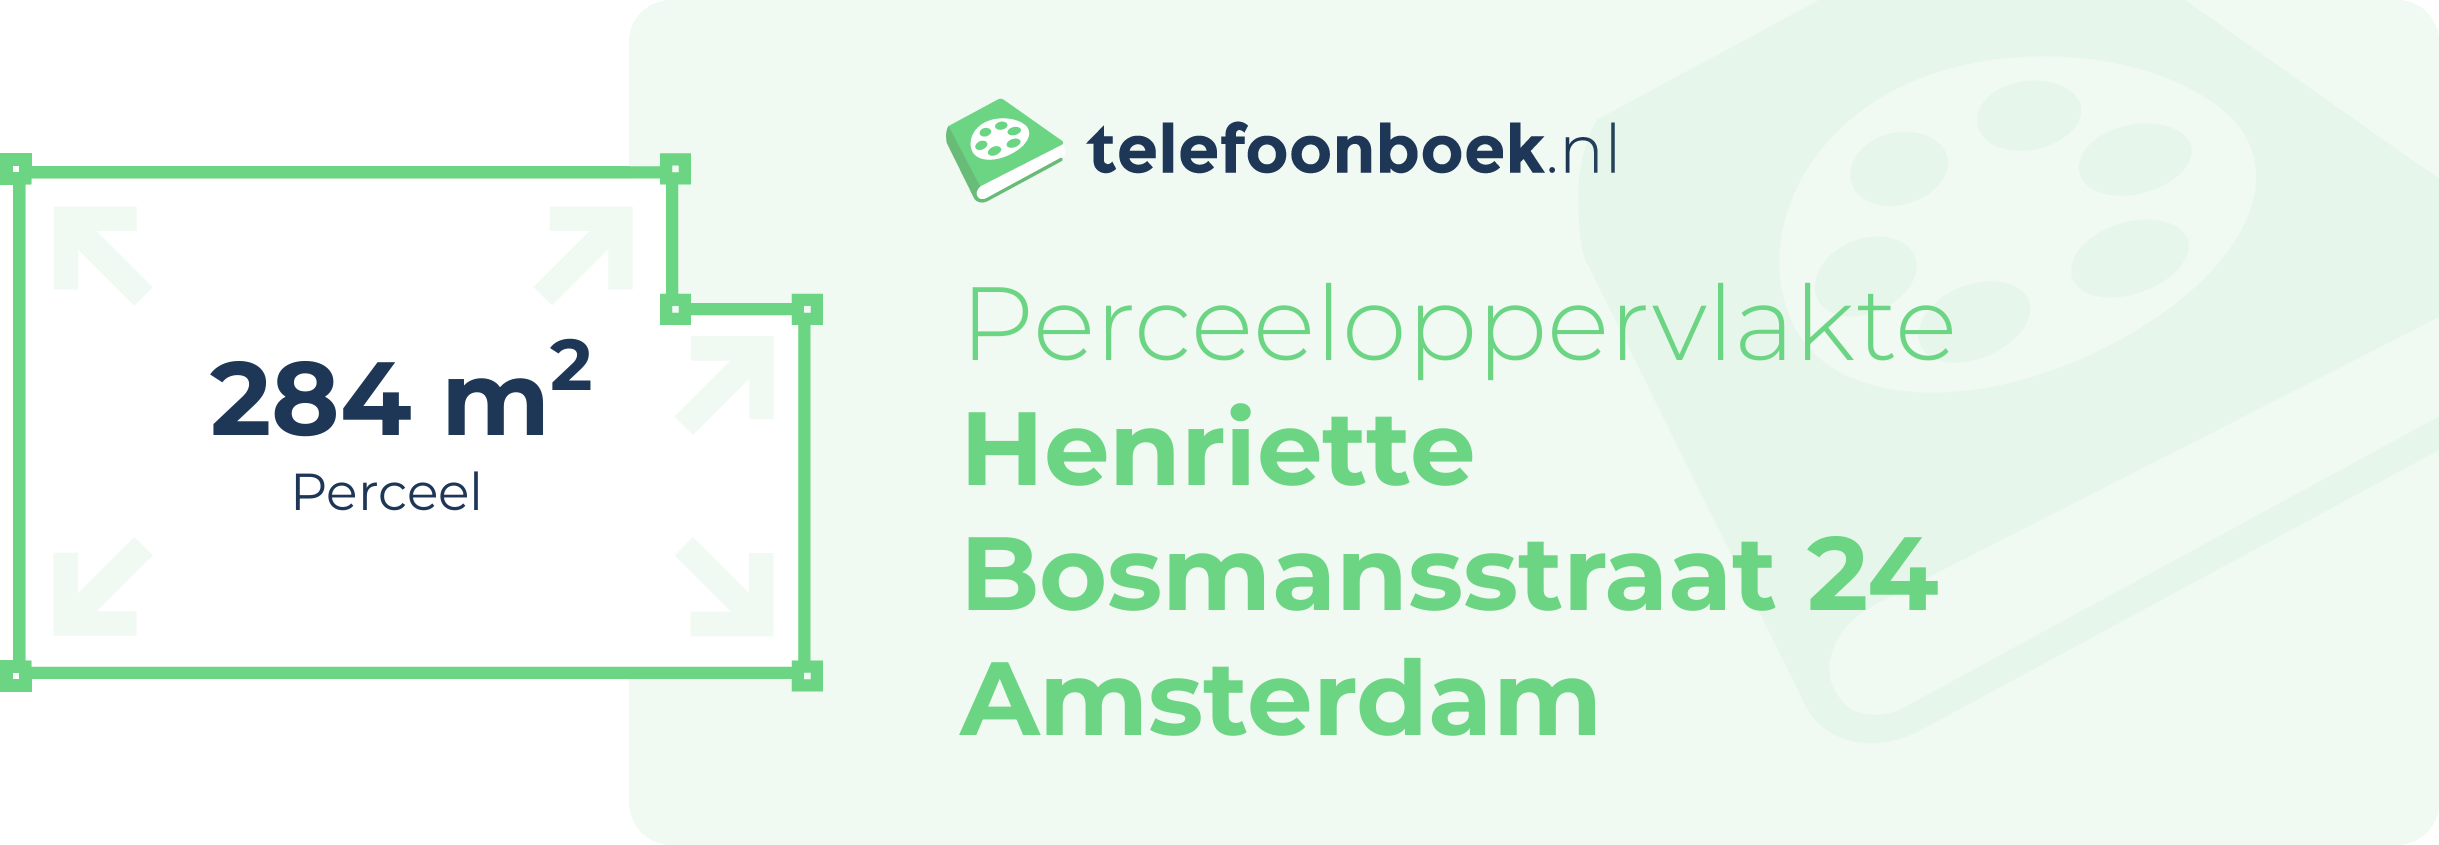 Perceeloppervlakte Henriette Bosmansstraat 24 Amsterdam